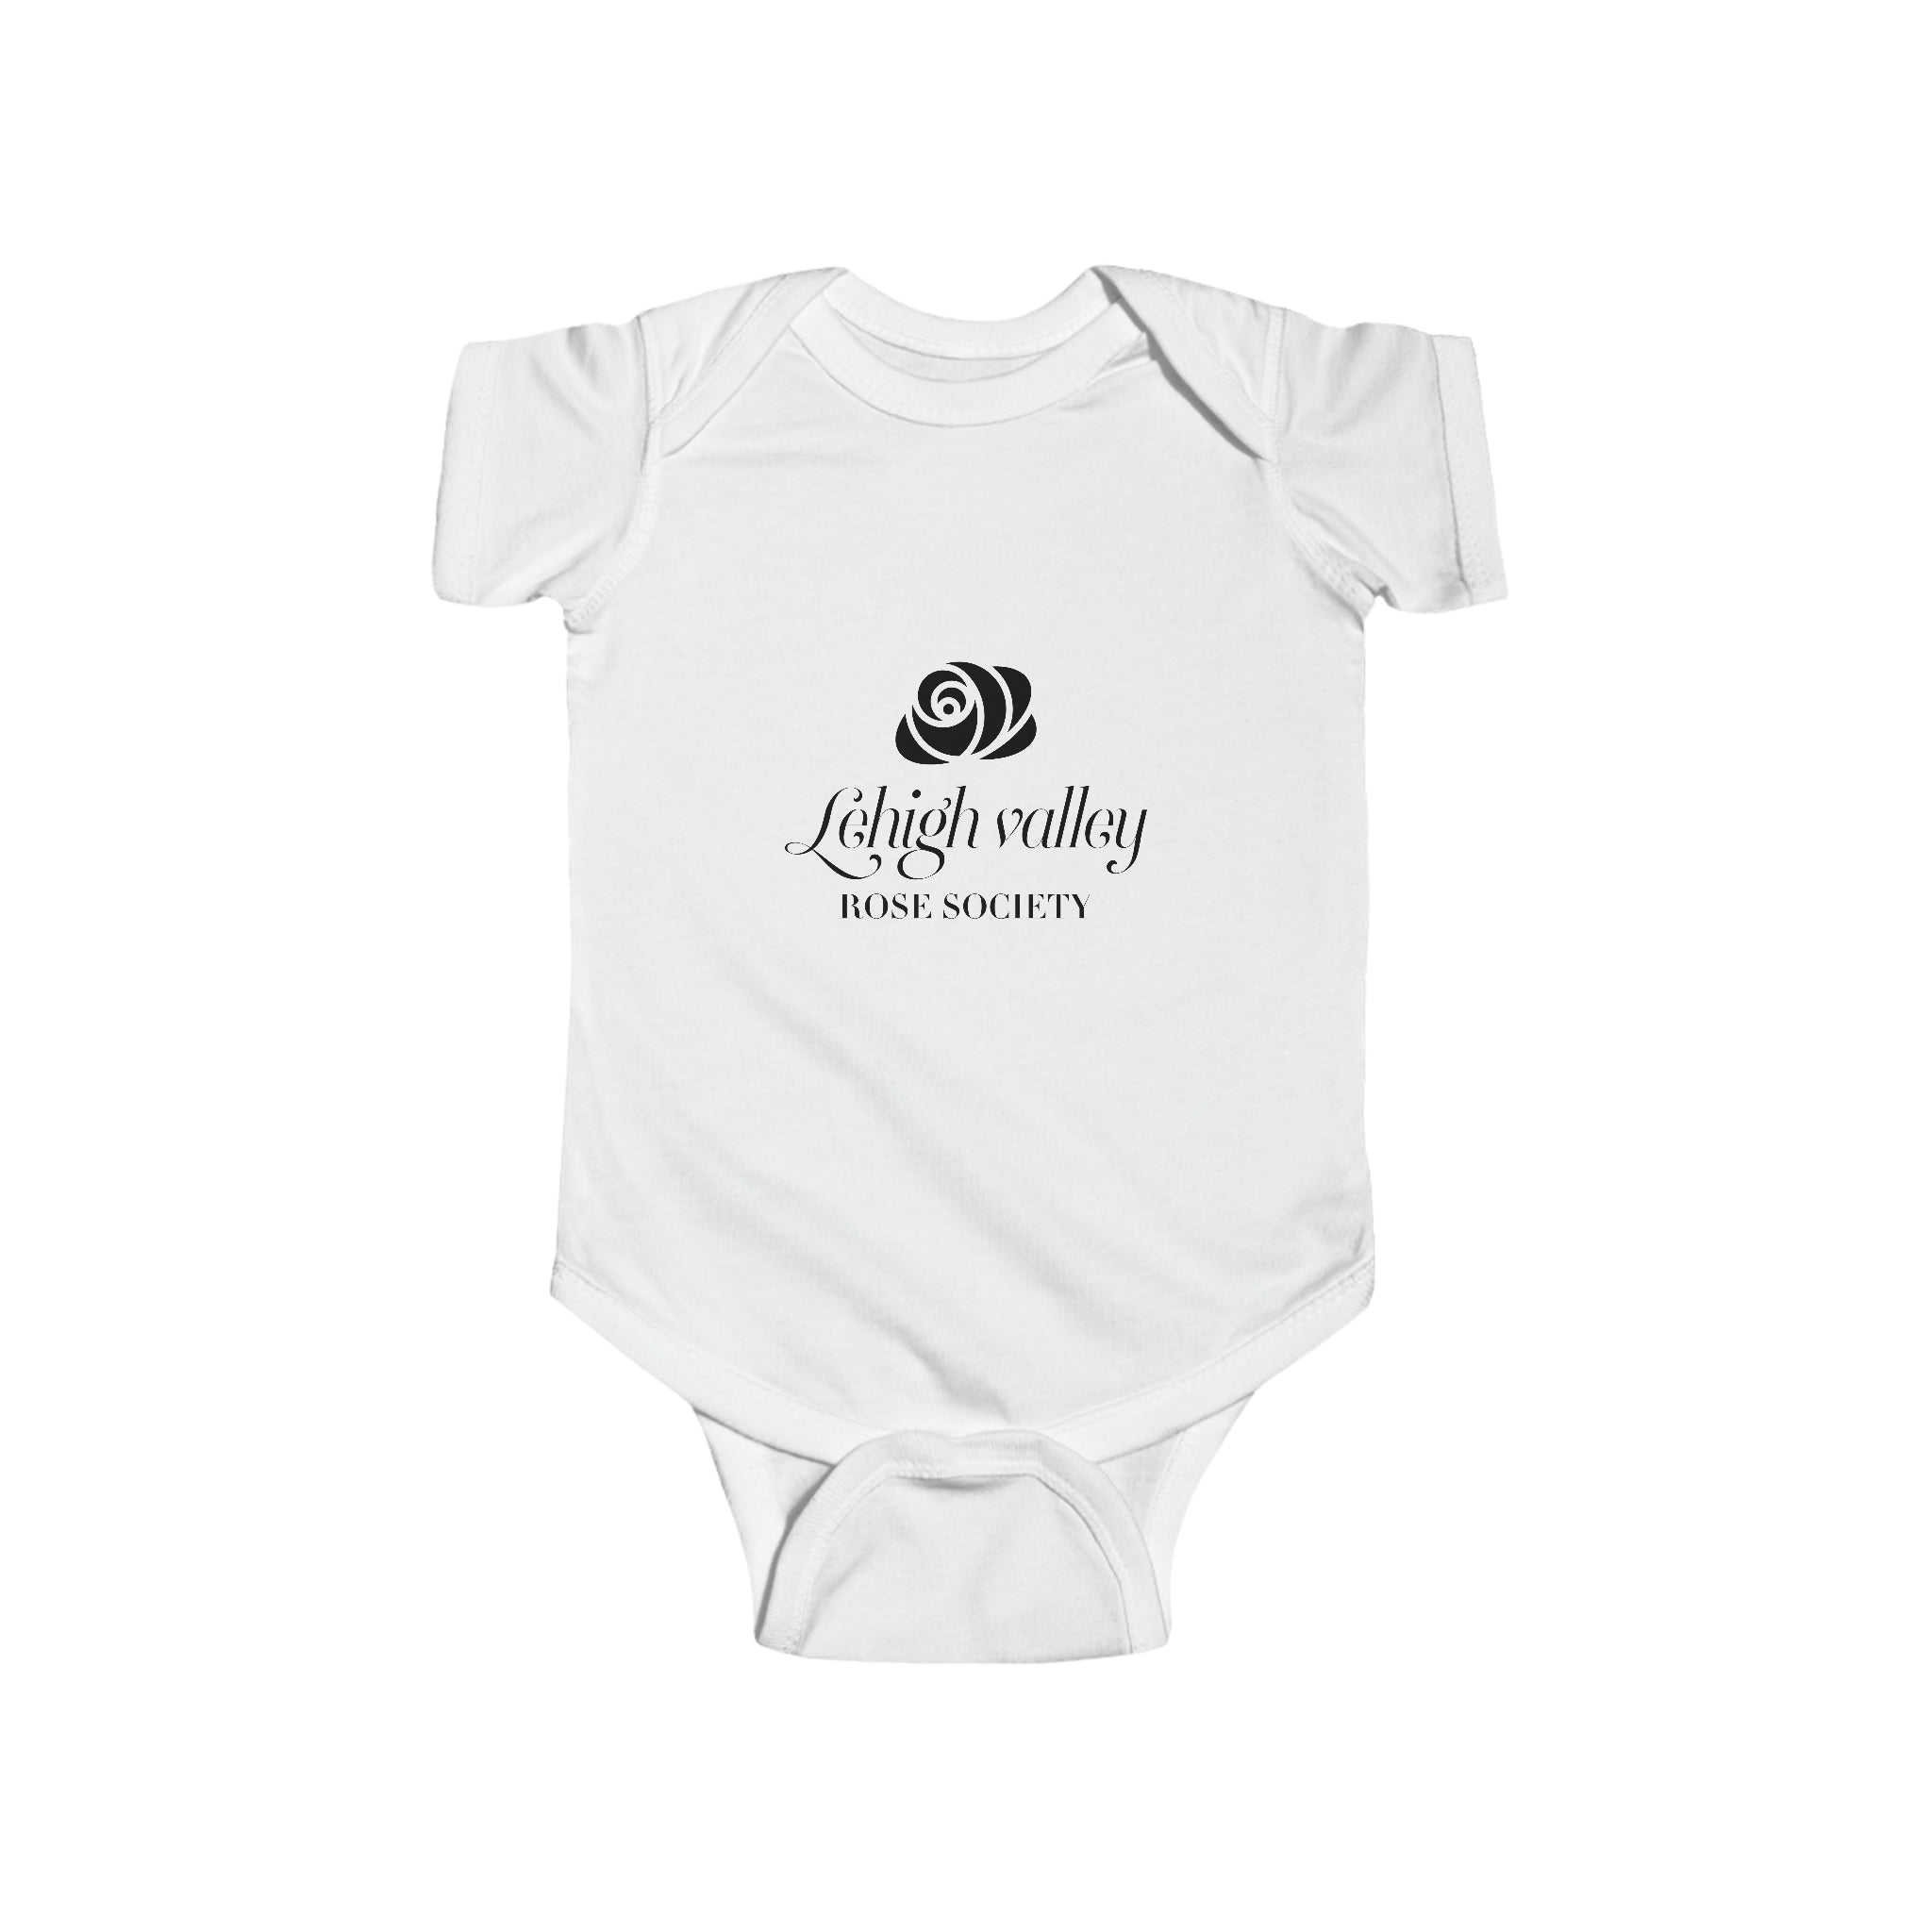 lv infant clothes